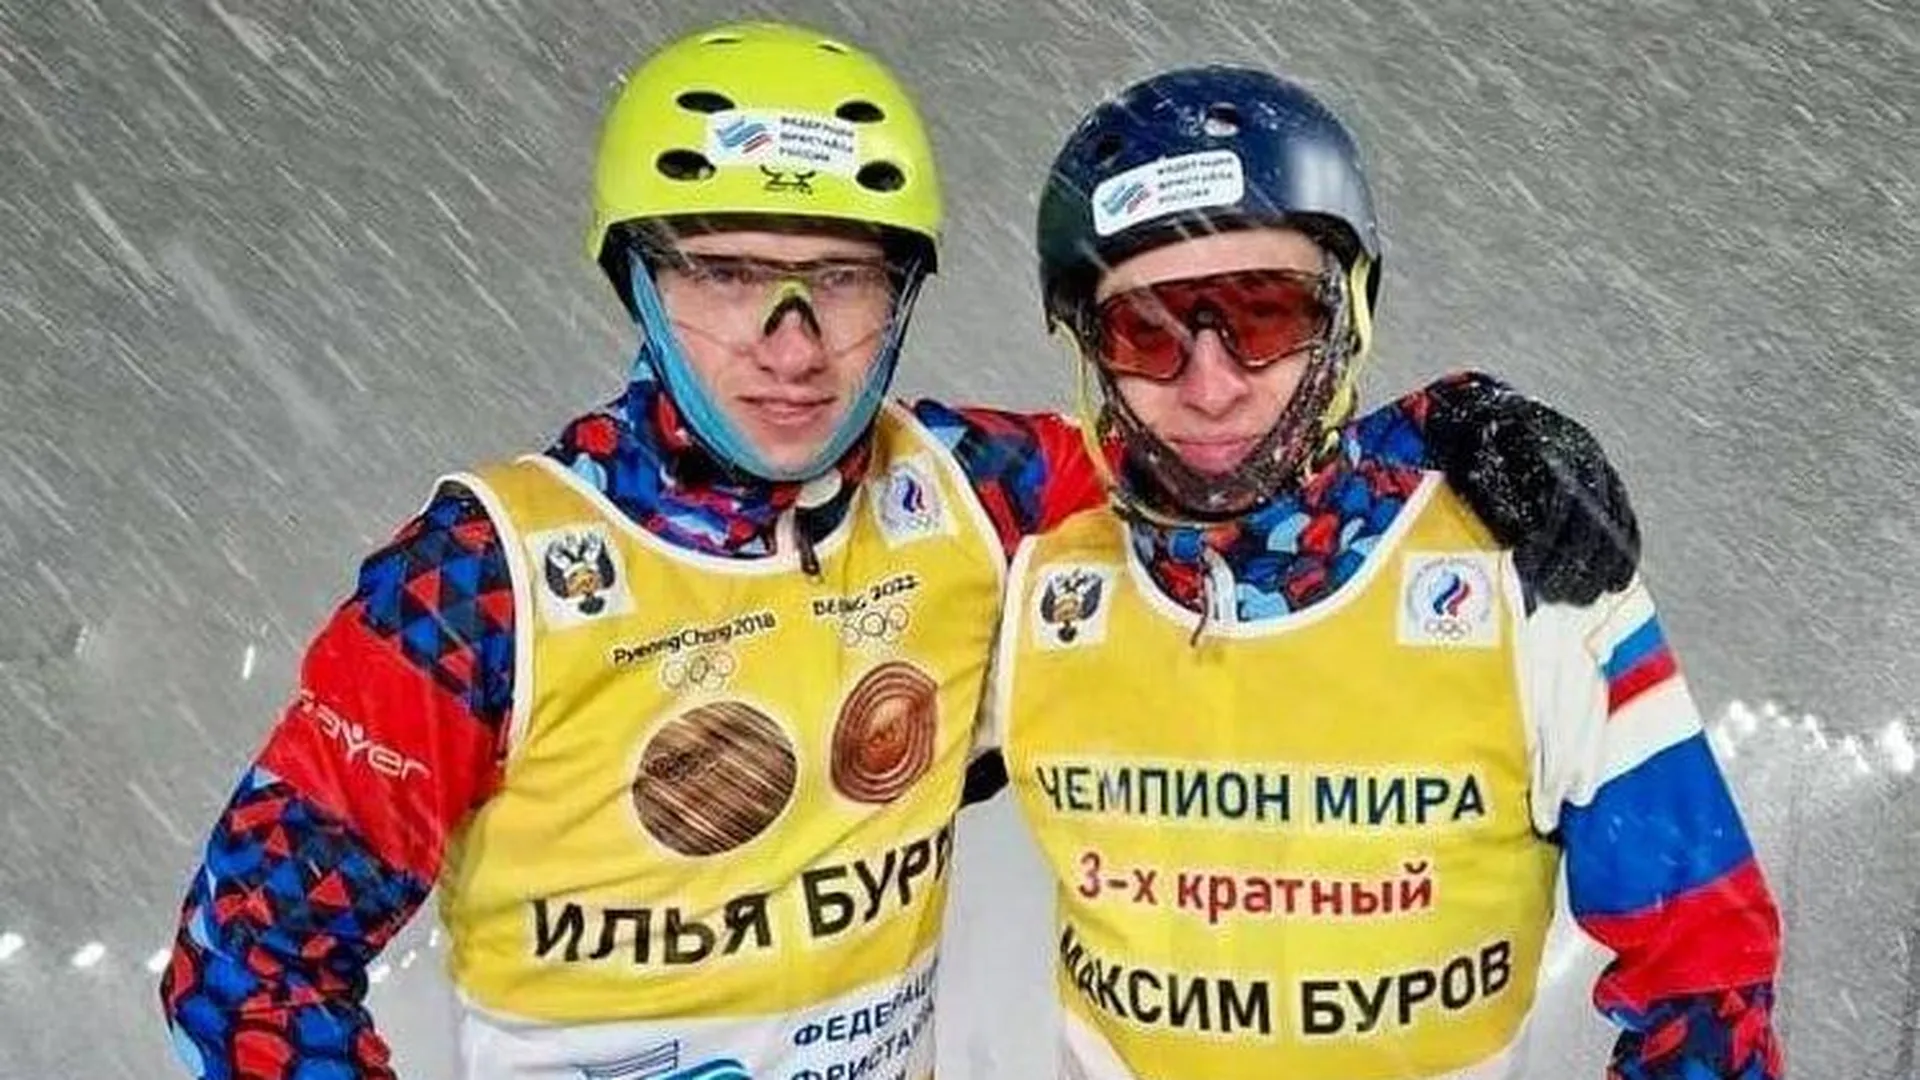 Братья-акробаты из Подмосковья выиграли медали на этапах Кубка России по фристайлу